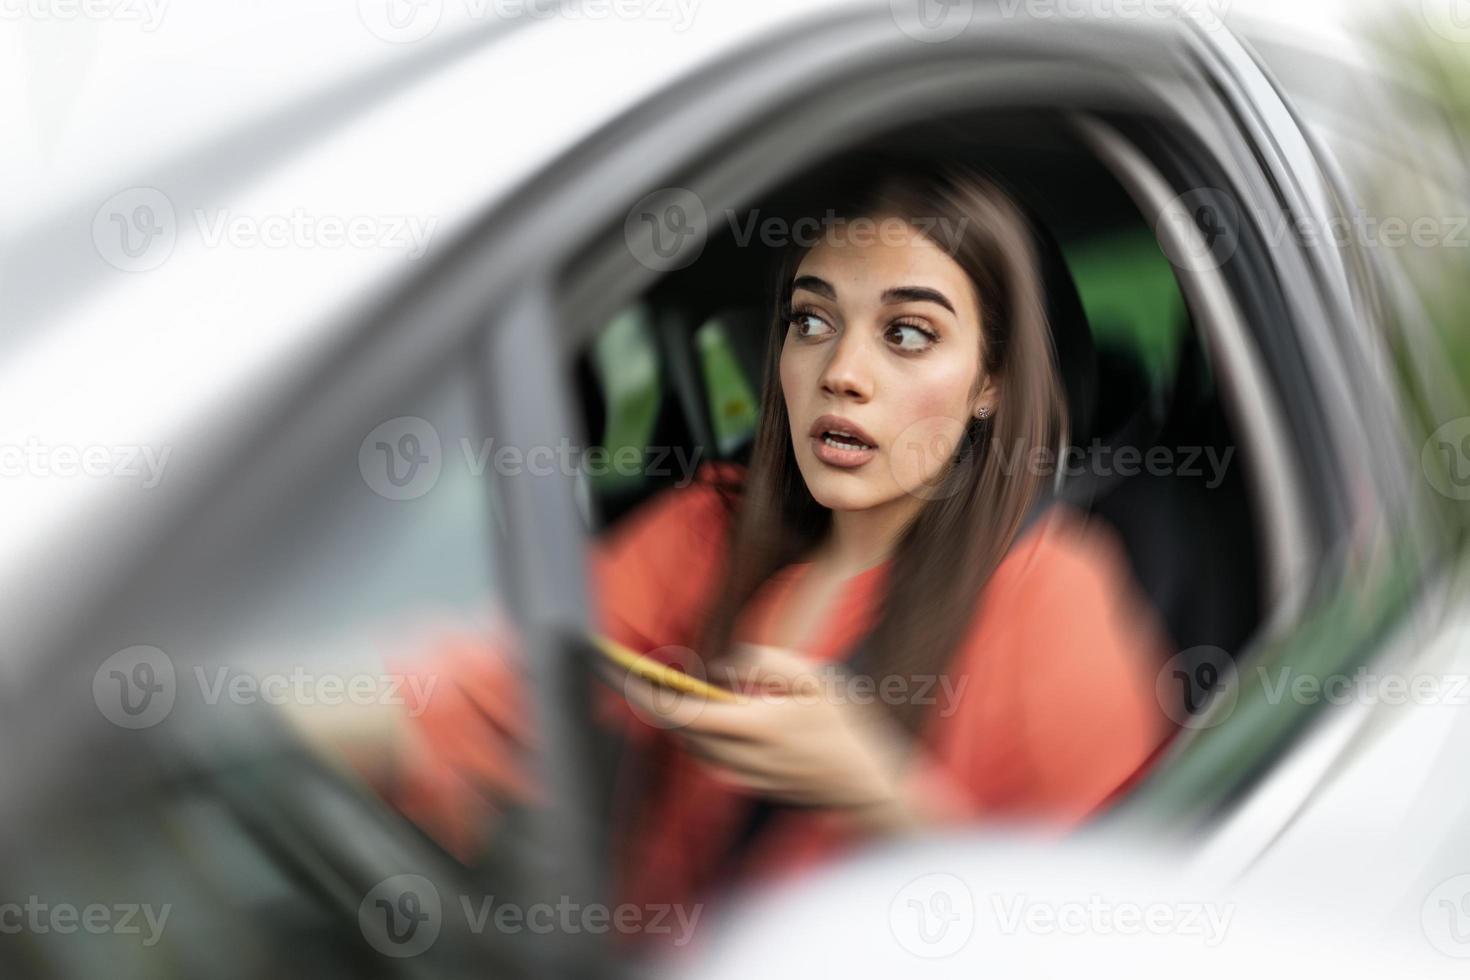 sms e guida, dietro a il ruota. rottura il legge. donna guida auto distratto di sua mobile Telefono causando un incidente foto